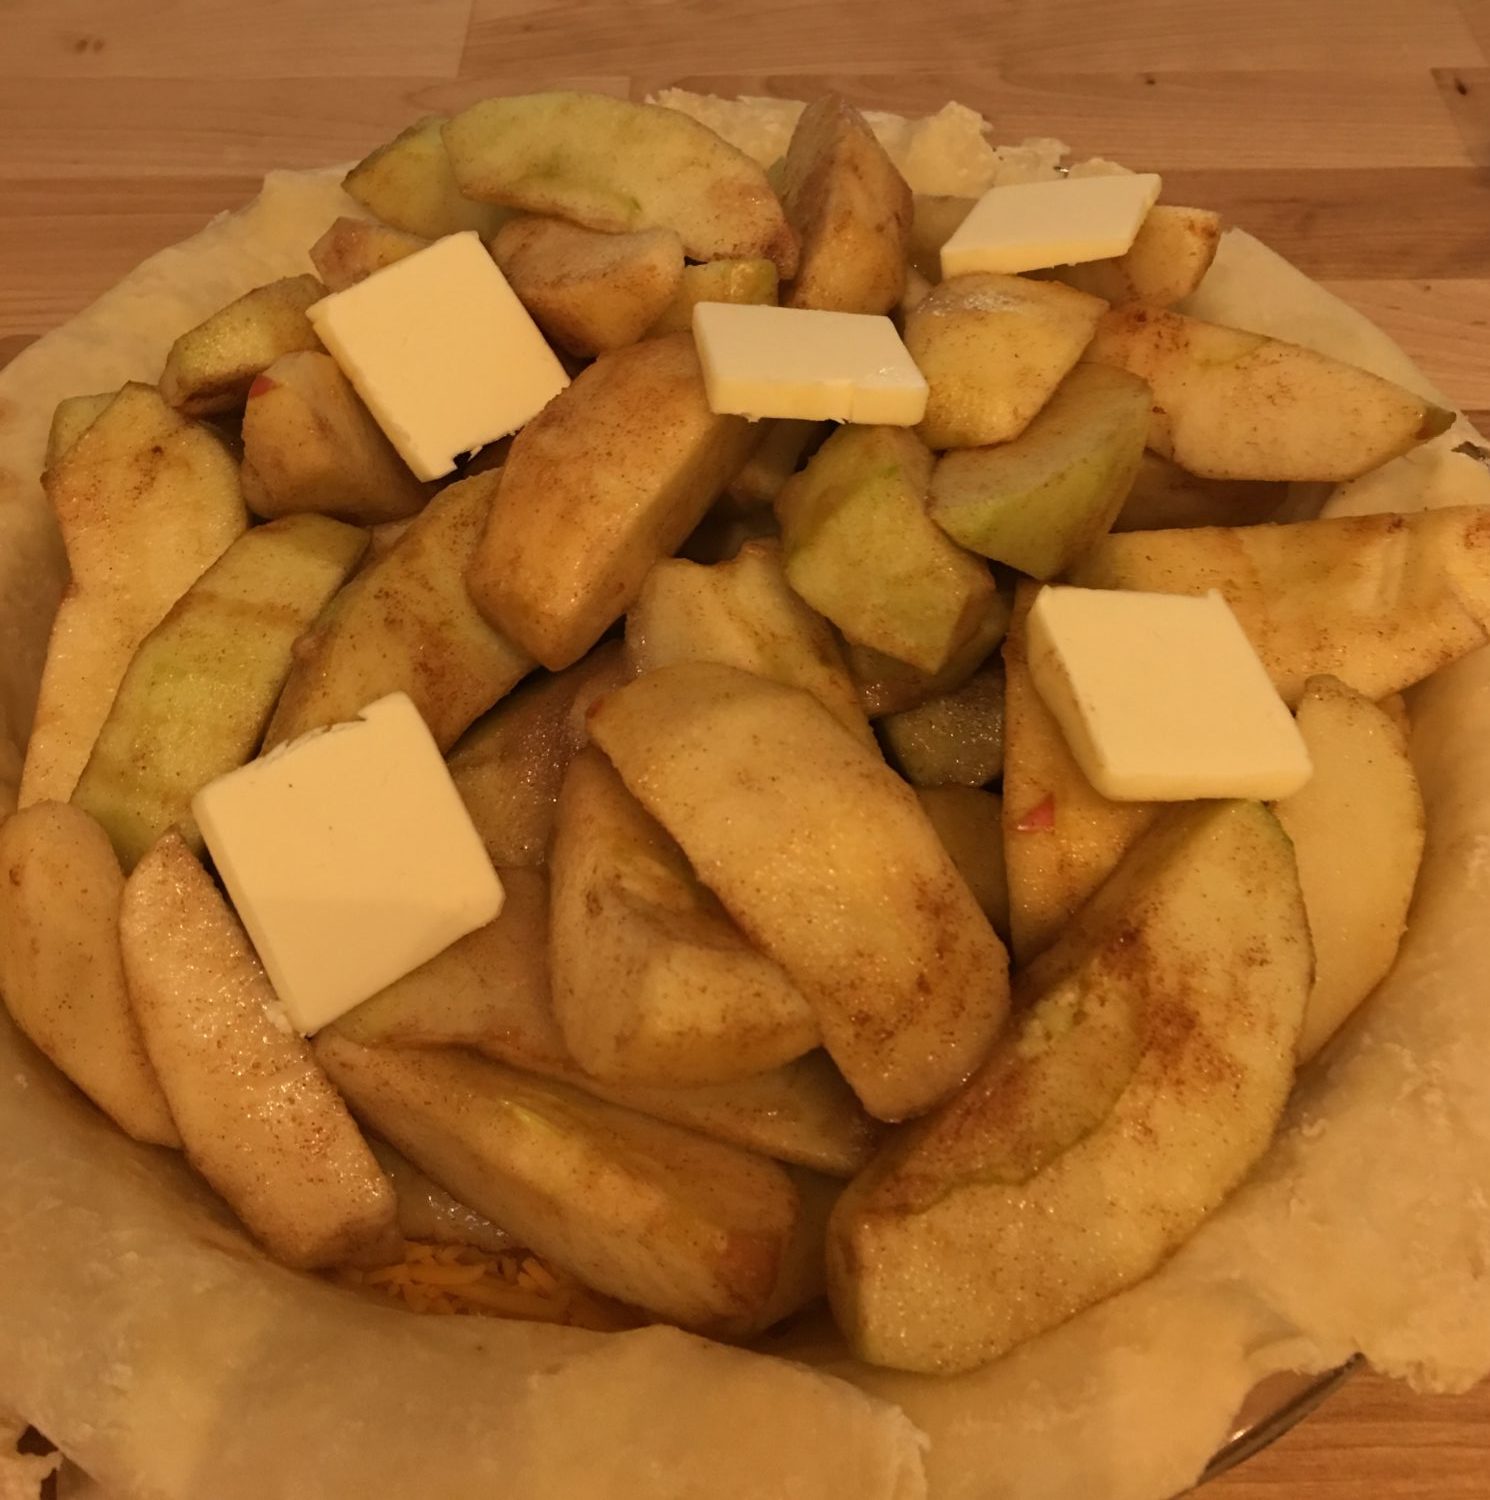 Apples in pie crust before baking